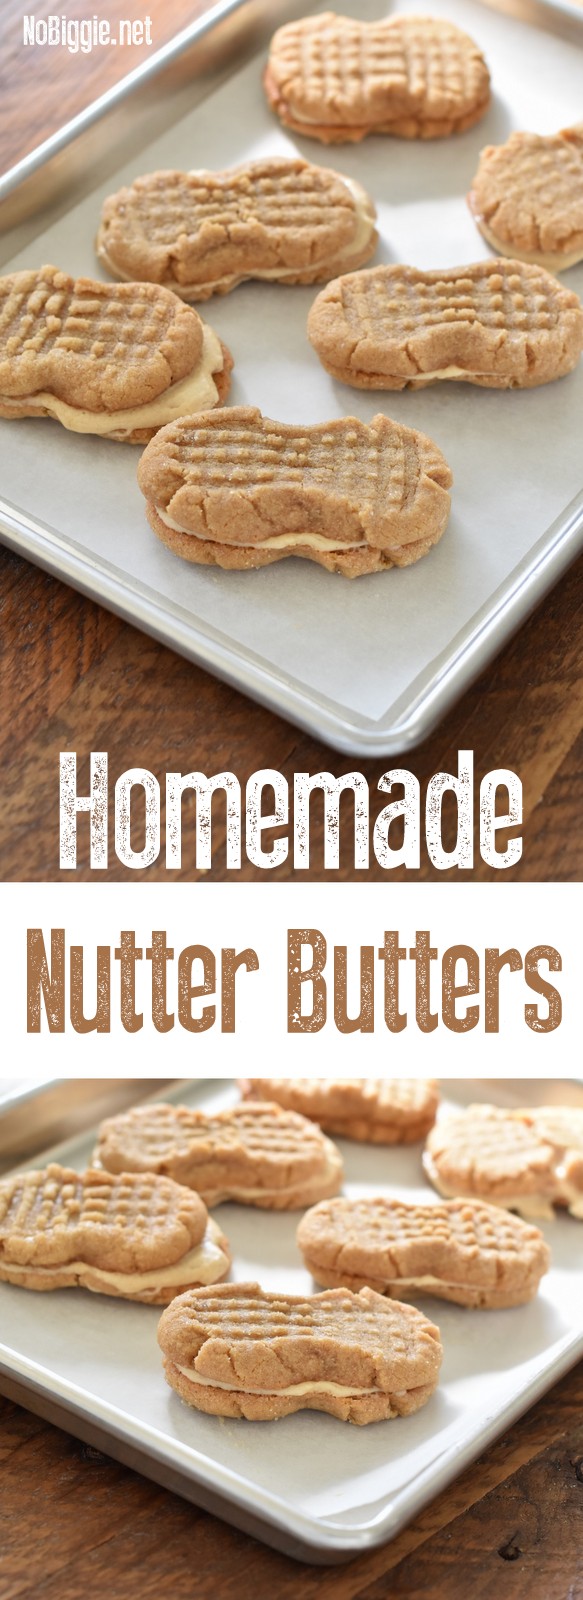 Homemade Nutter Butter Cookies | NoBiggie.net